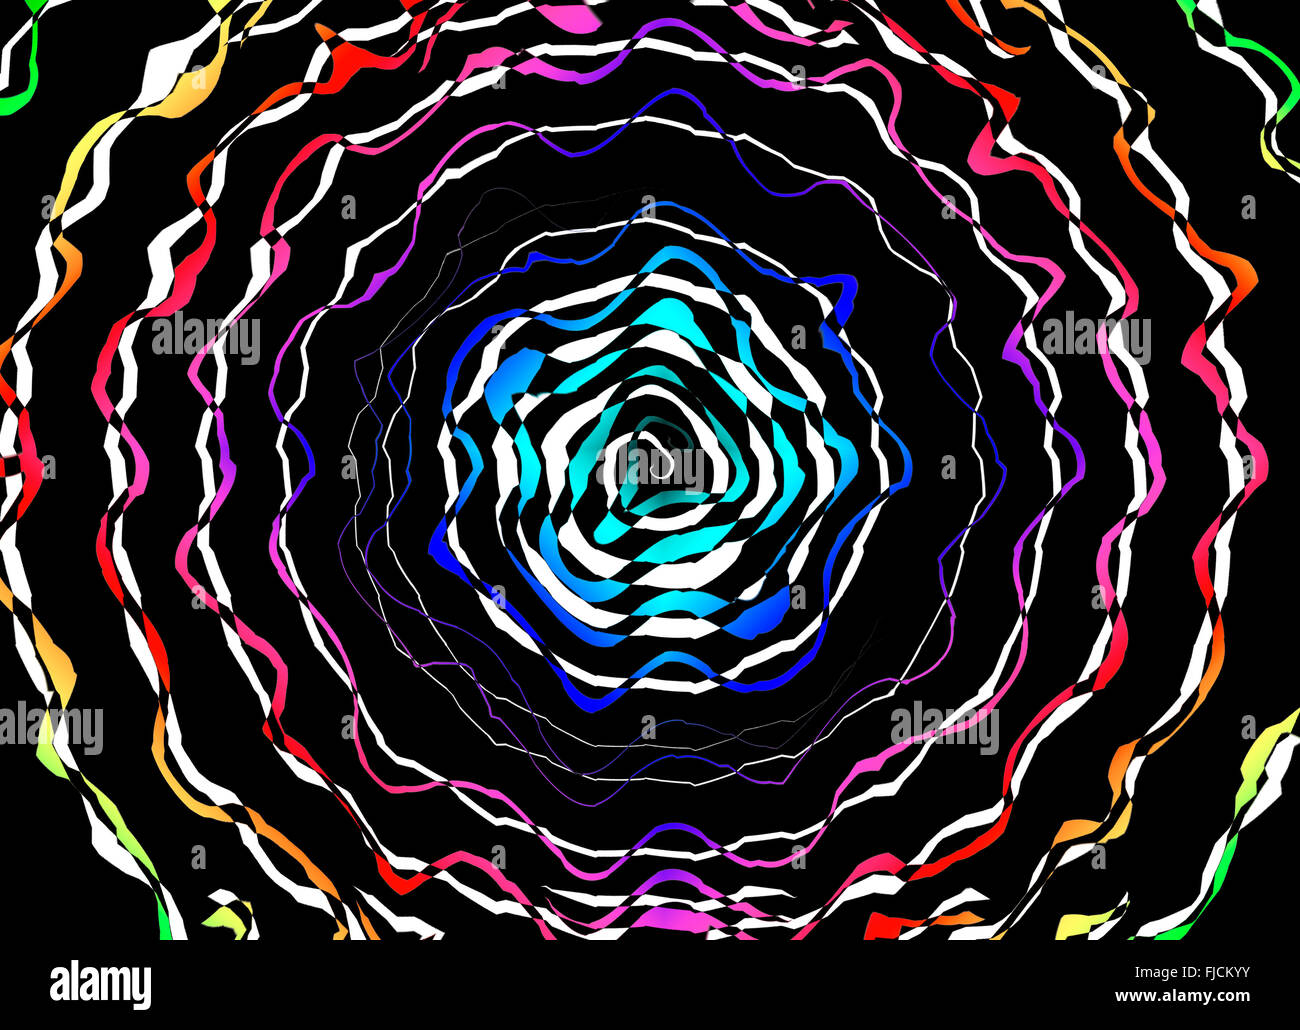 Hypnose psychédélique fond swirl illusion optique illustration Banque D'Images